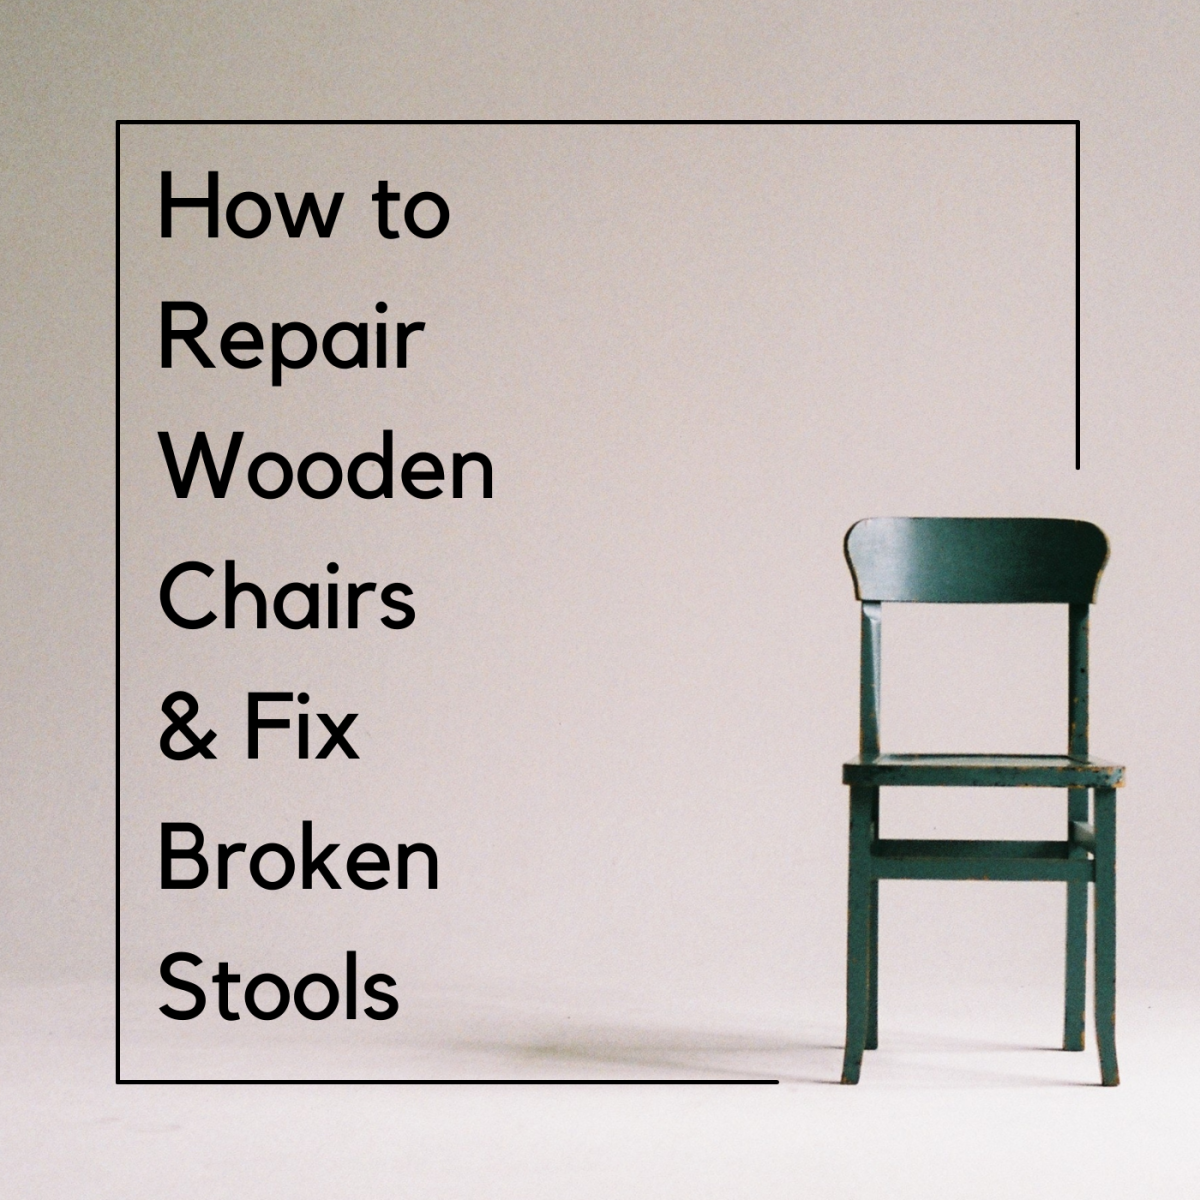 How to Repair Wooden Chairs and Fix Broken Stools - Dengarden